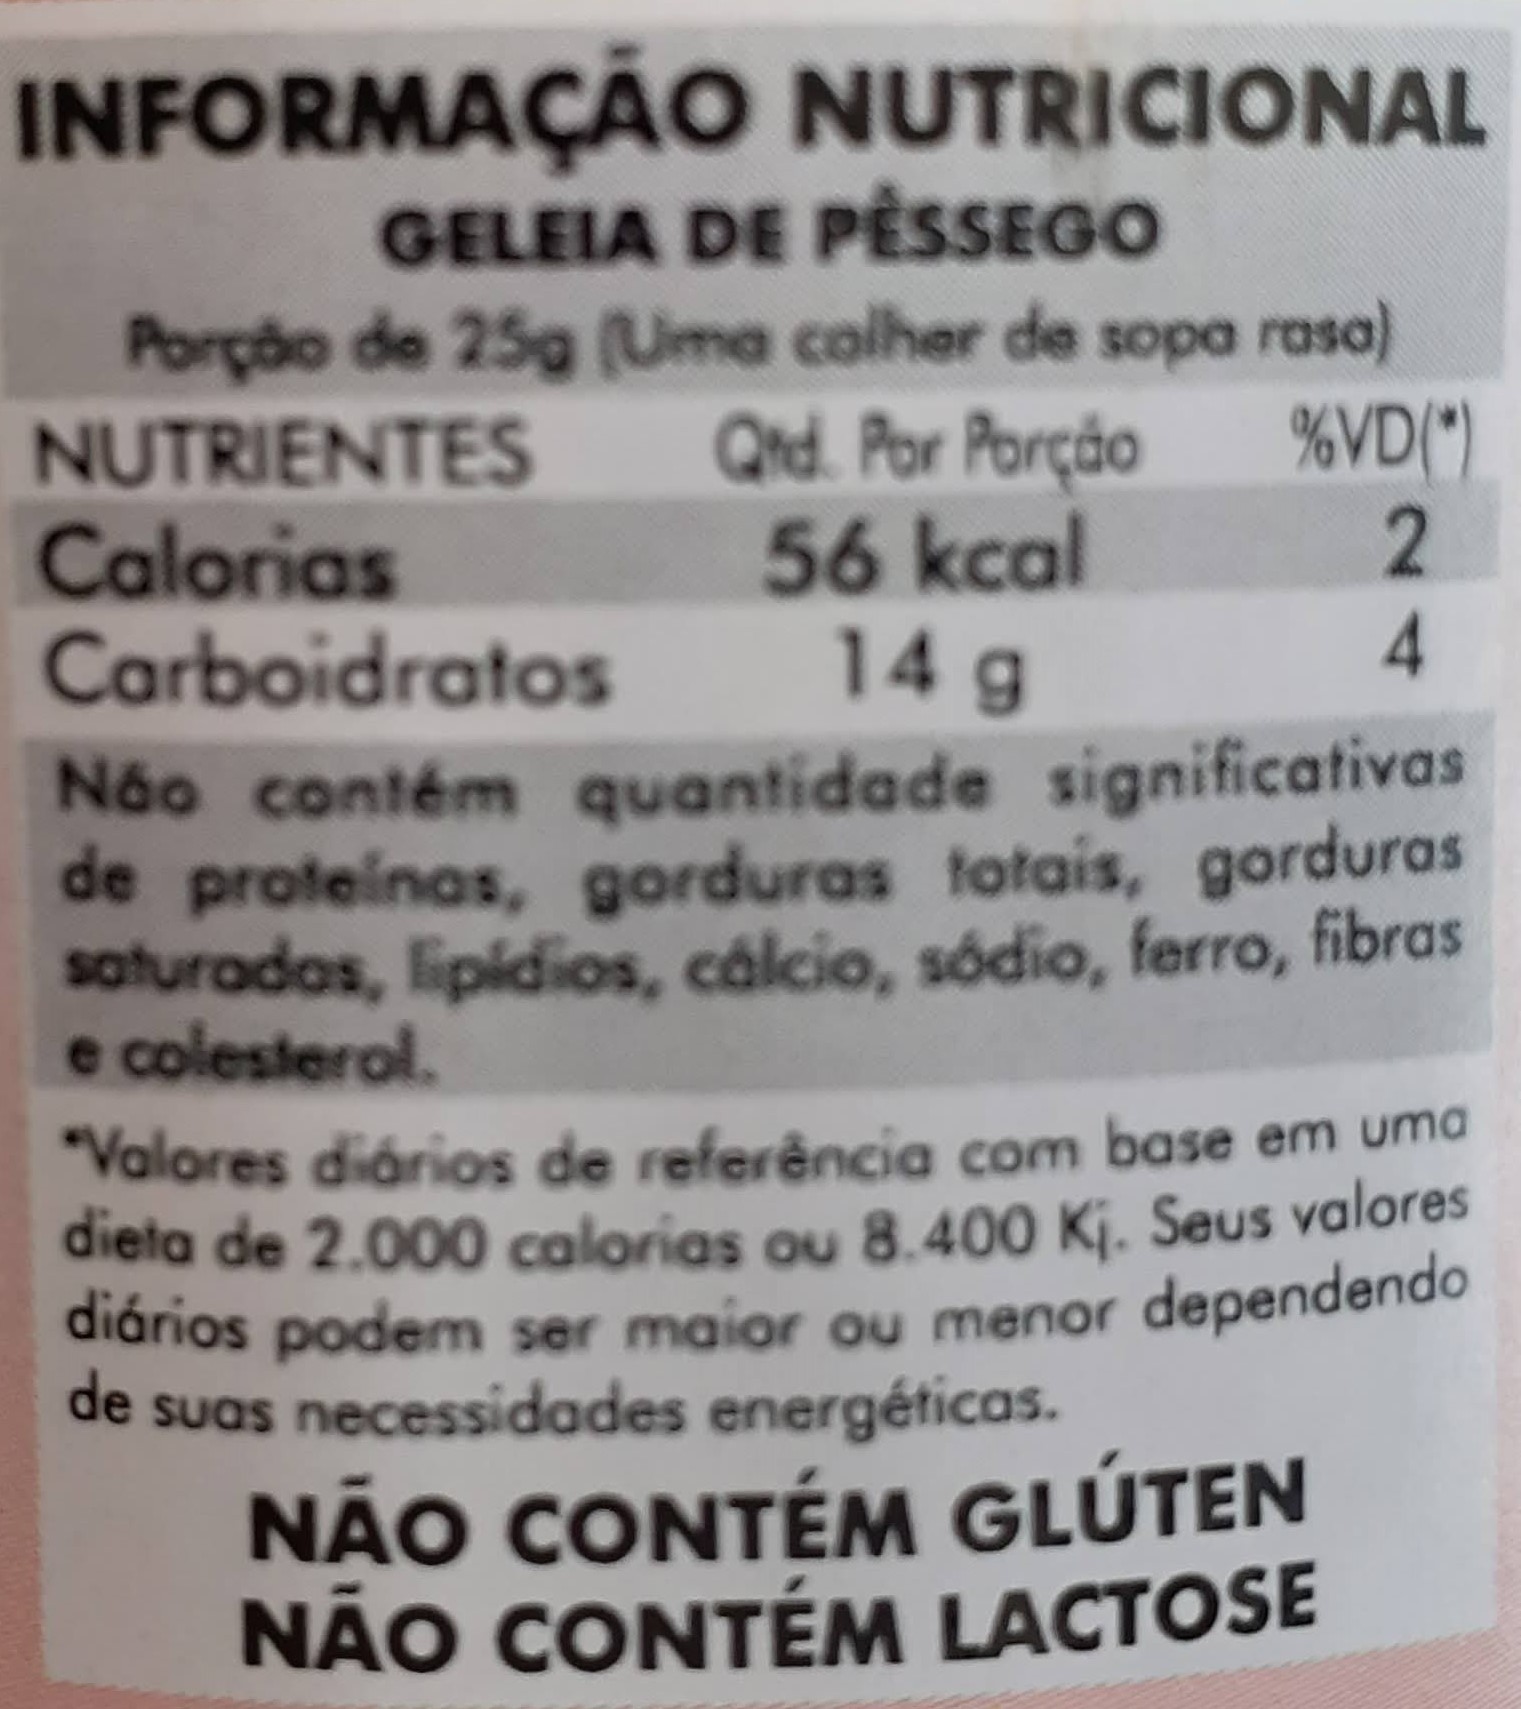 GELEIA DE PÊSSEGO  HF Carraro - Agroindústria de Produtos Orgânicos